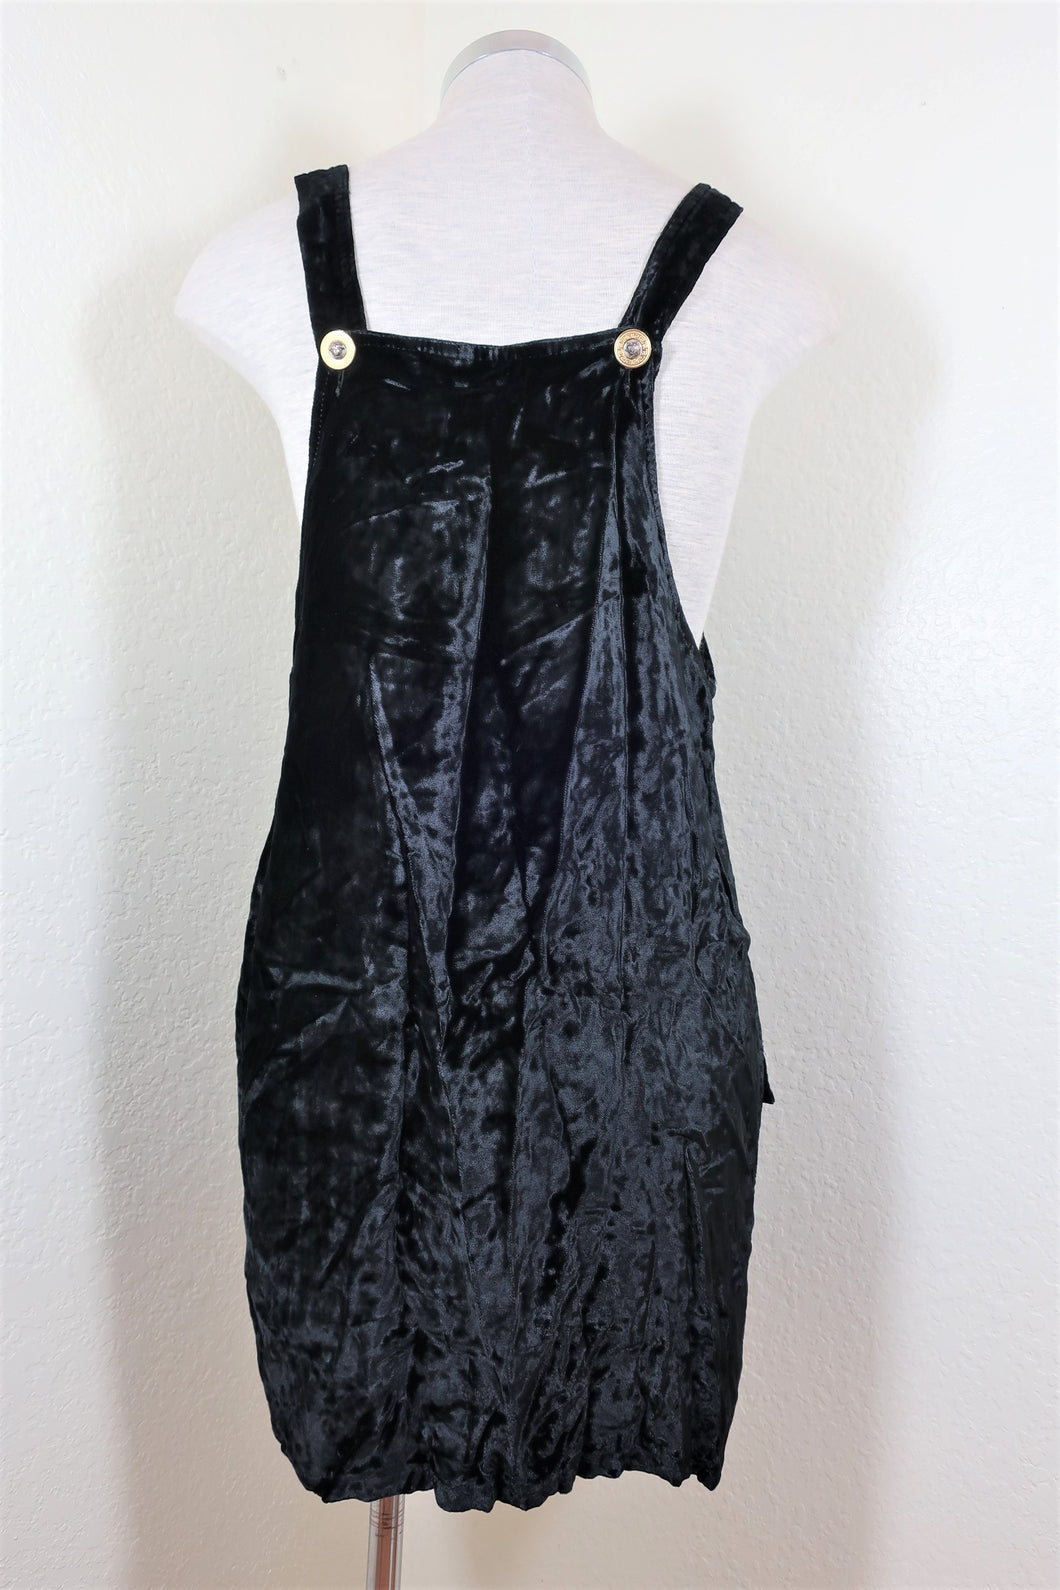 Vintage GIANNI VERSACE Black Velvet Medusa Face Jumper Dress Small 4 5 6 30 / 44